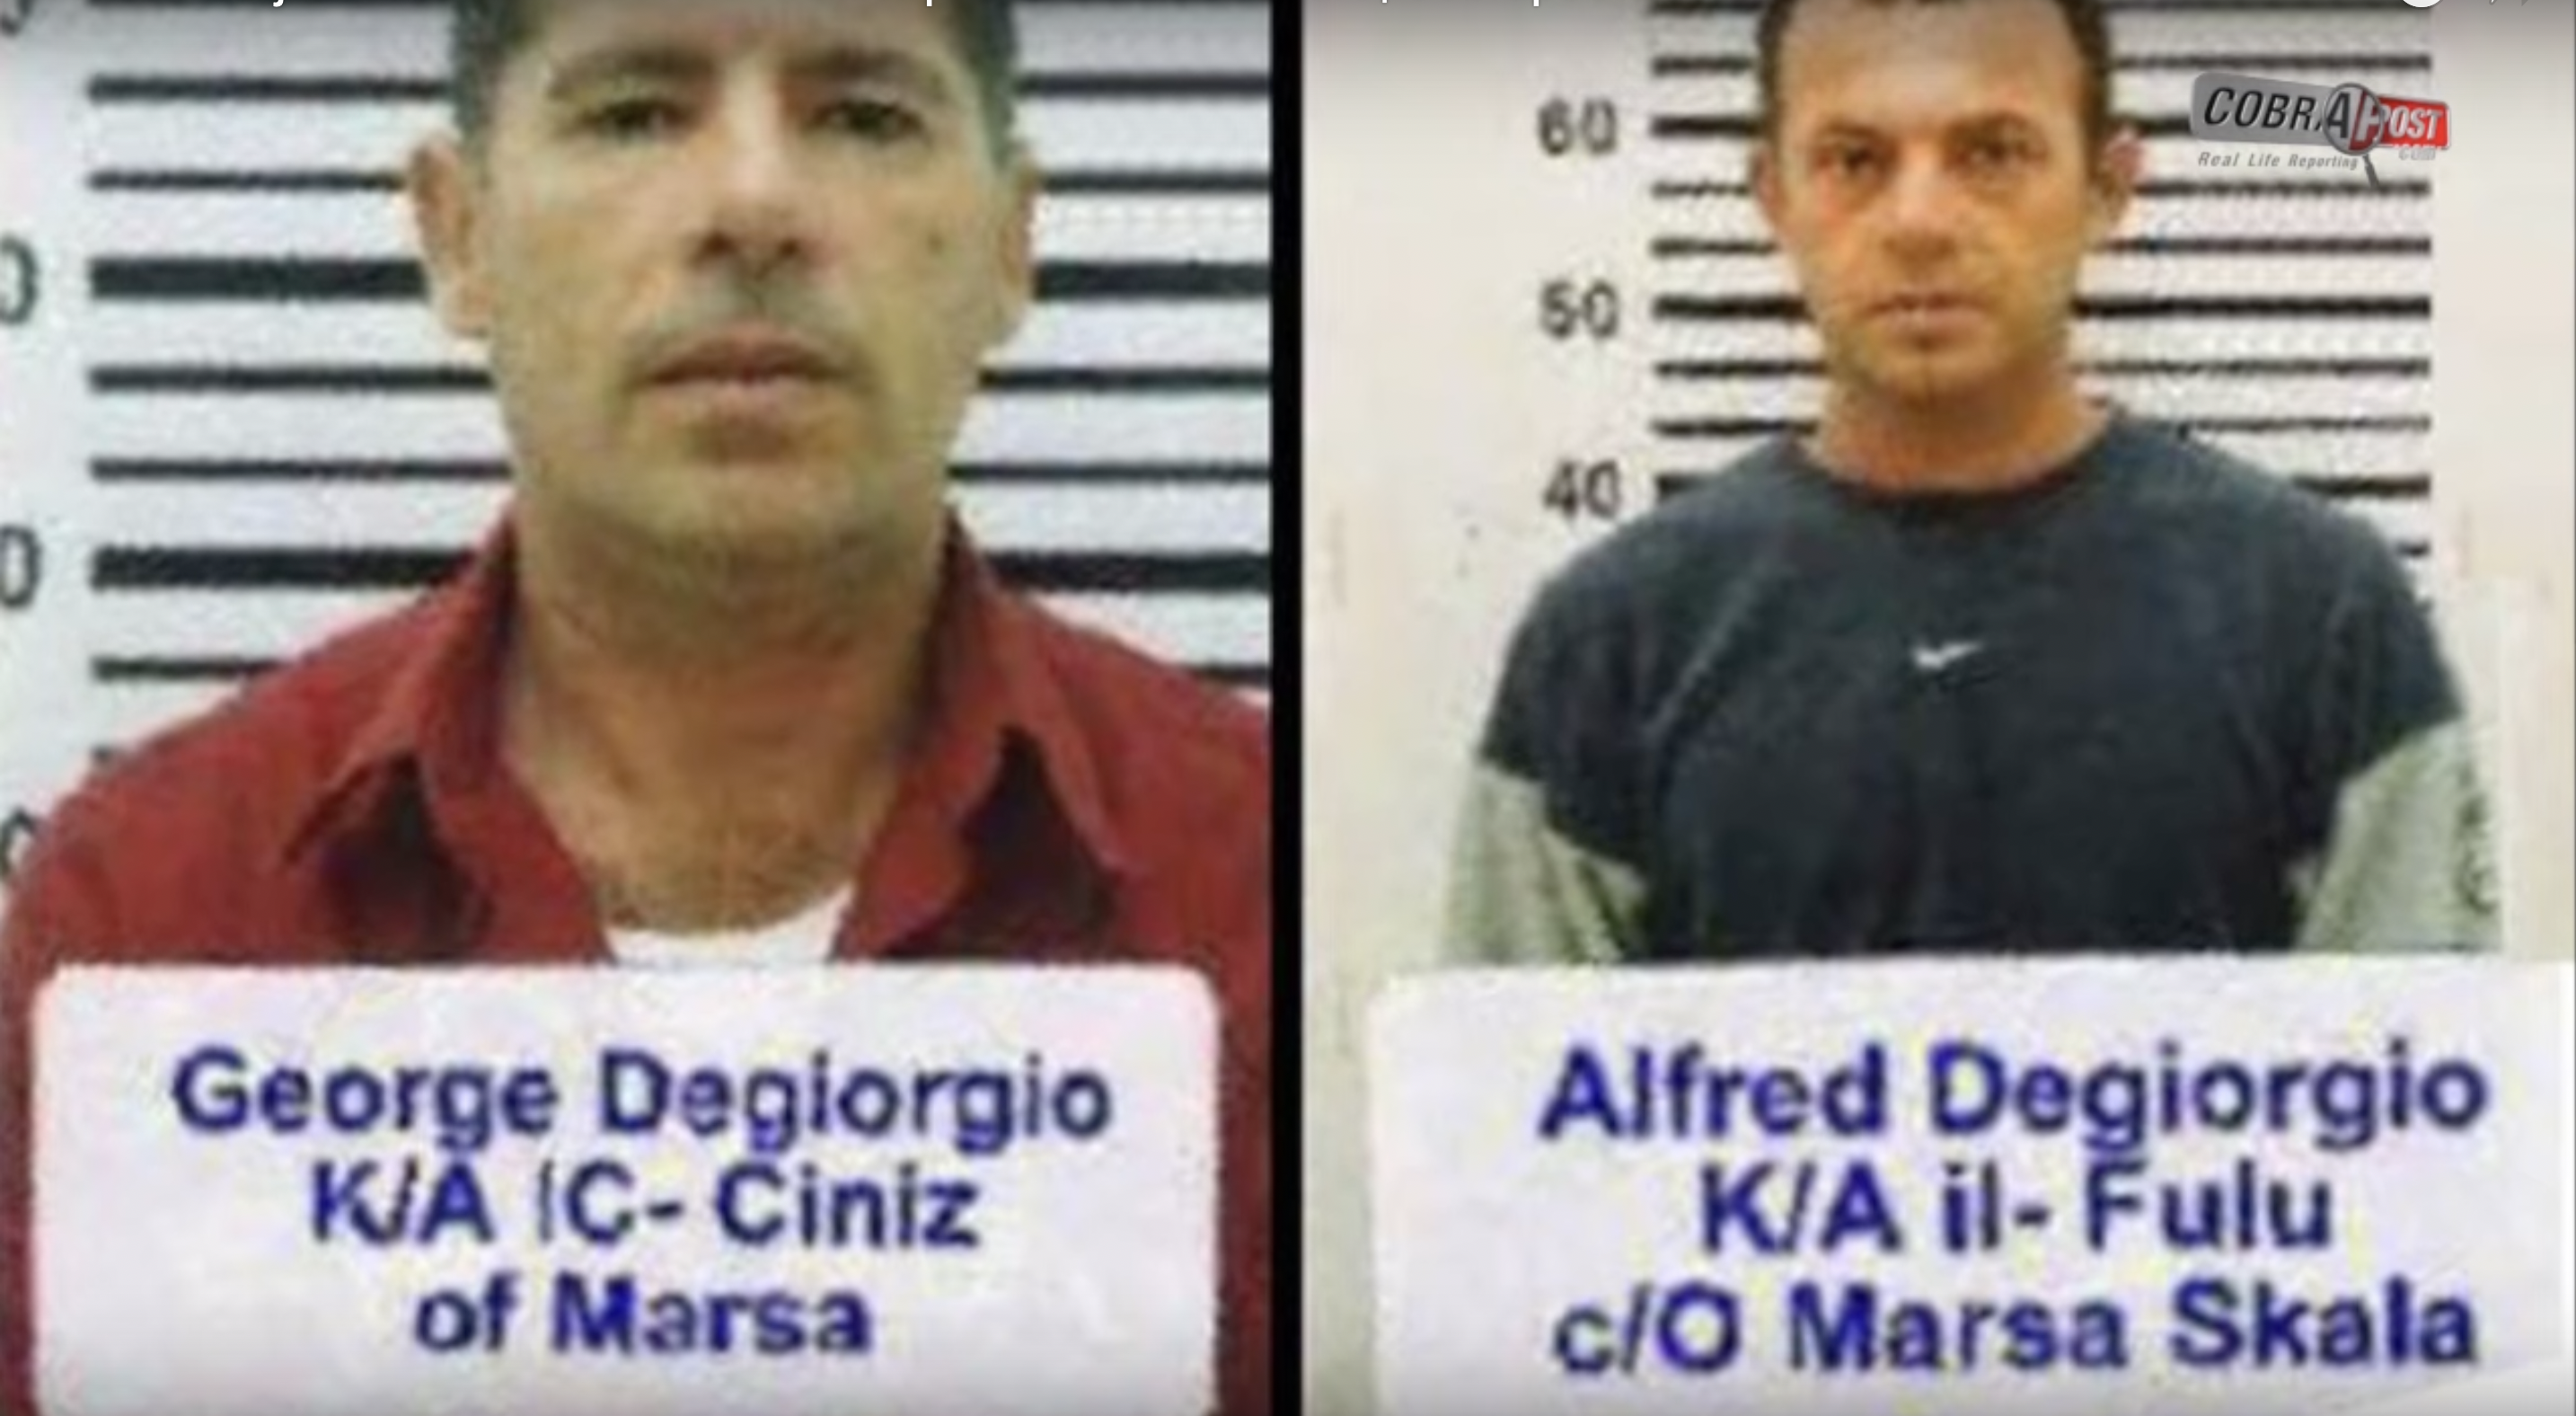 Bratia dostali za vraždu investigatívnej novinárky štyridsať rokov väzenia